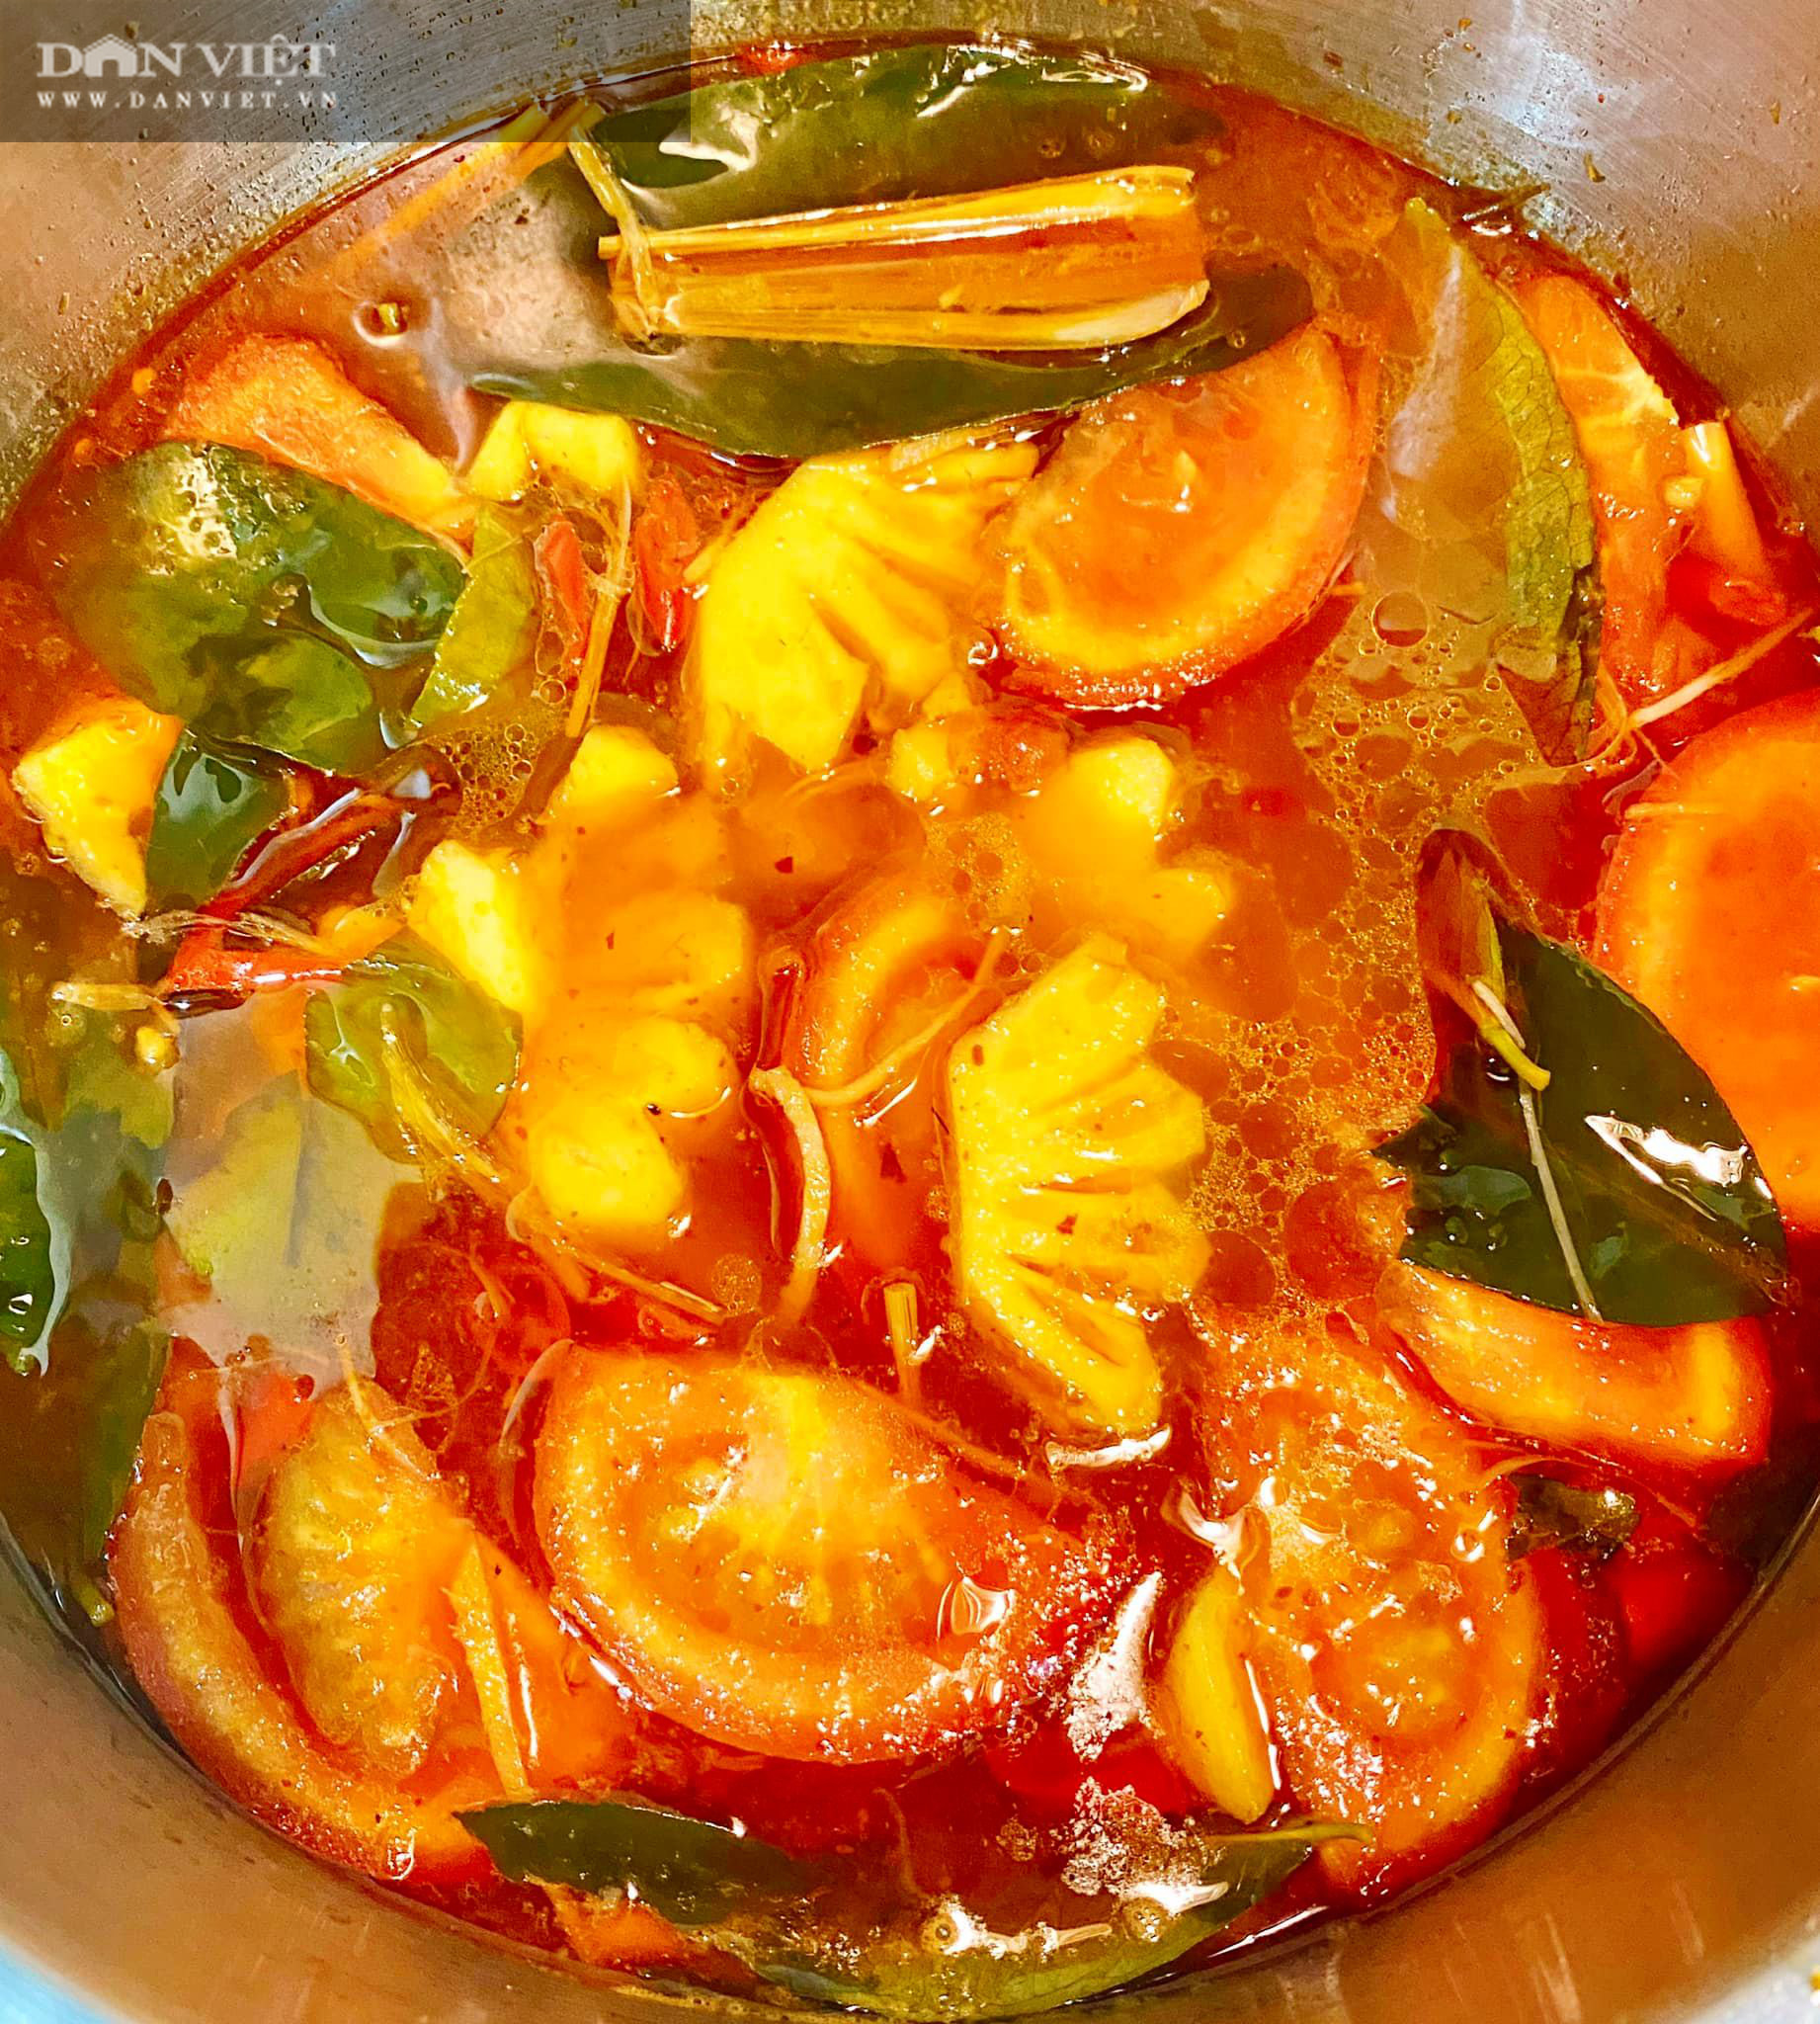 Tuyệt chiêu món lẩu Thái chua cay thơm ngon chuẩn vị cho ngày se lạnh - Ảnh 7.